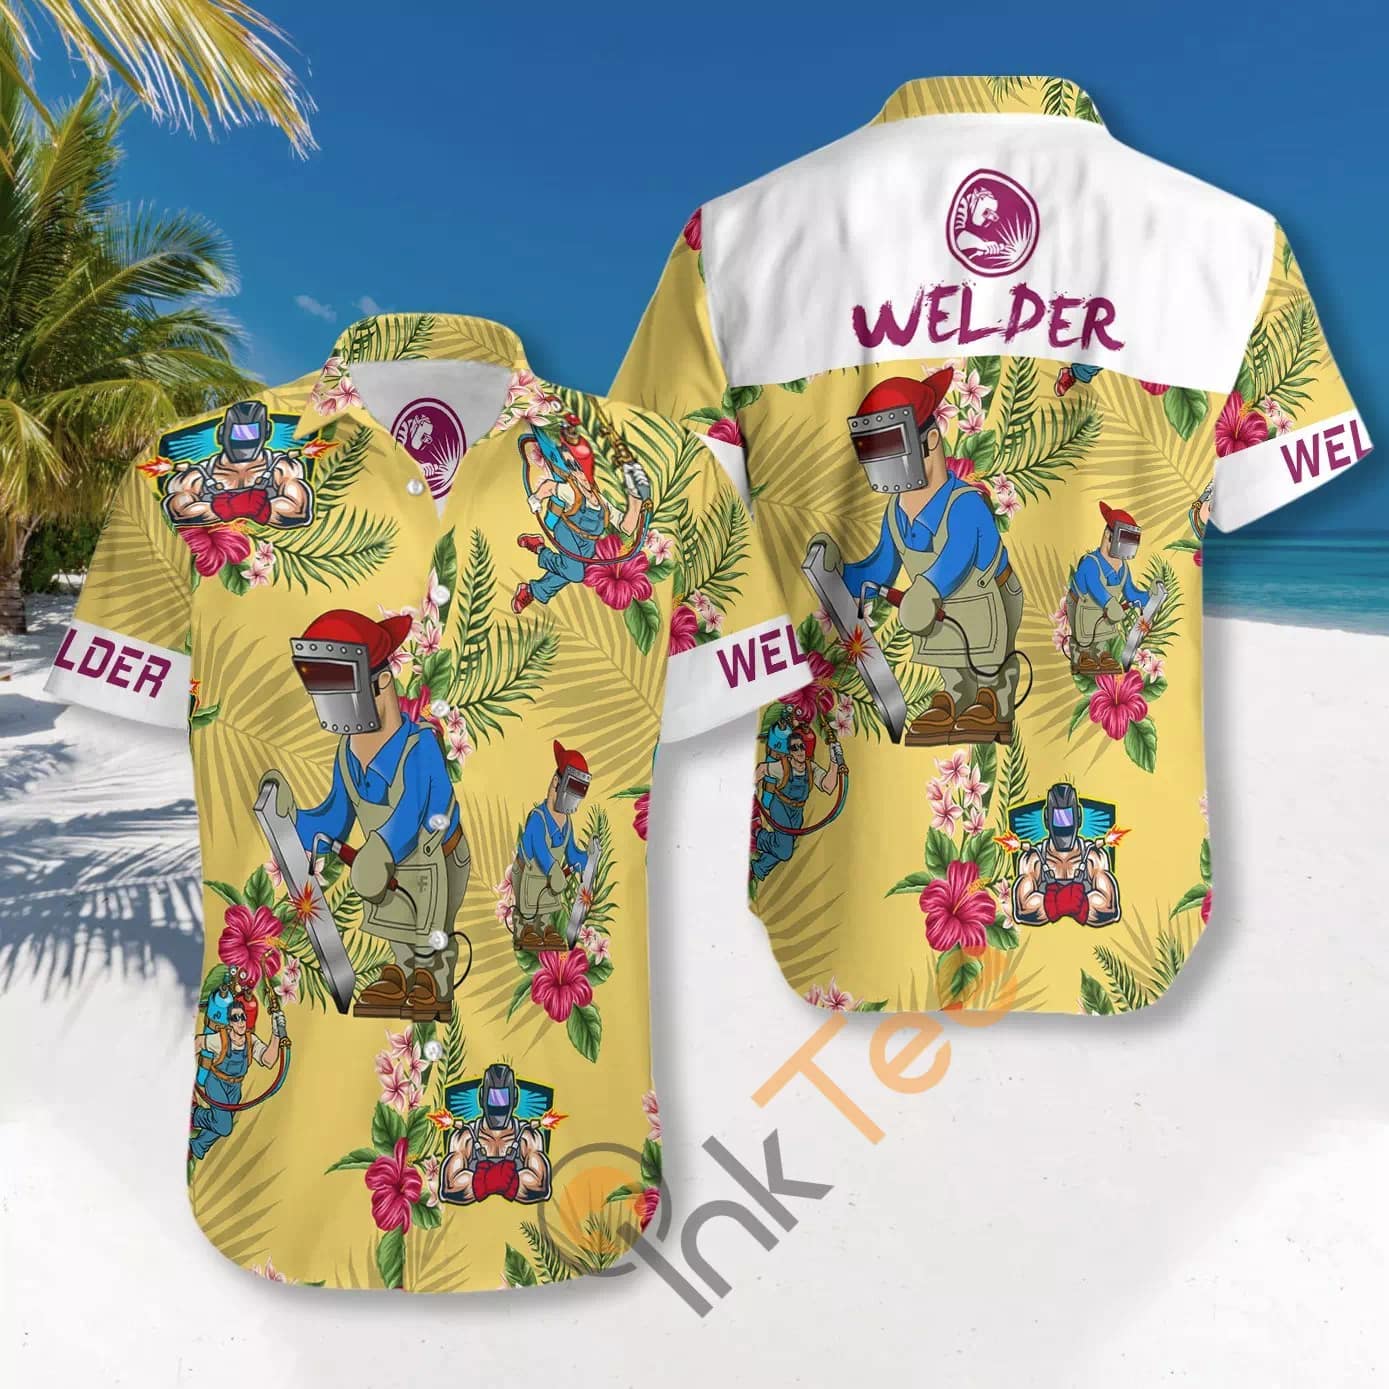 Welder N817 Hawaiian shirts